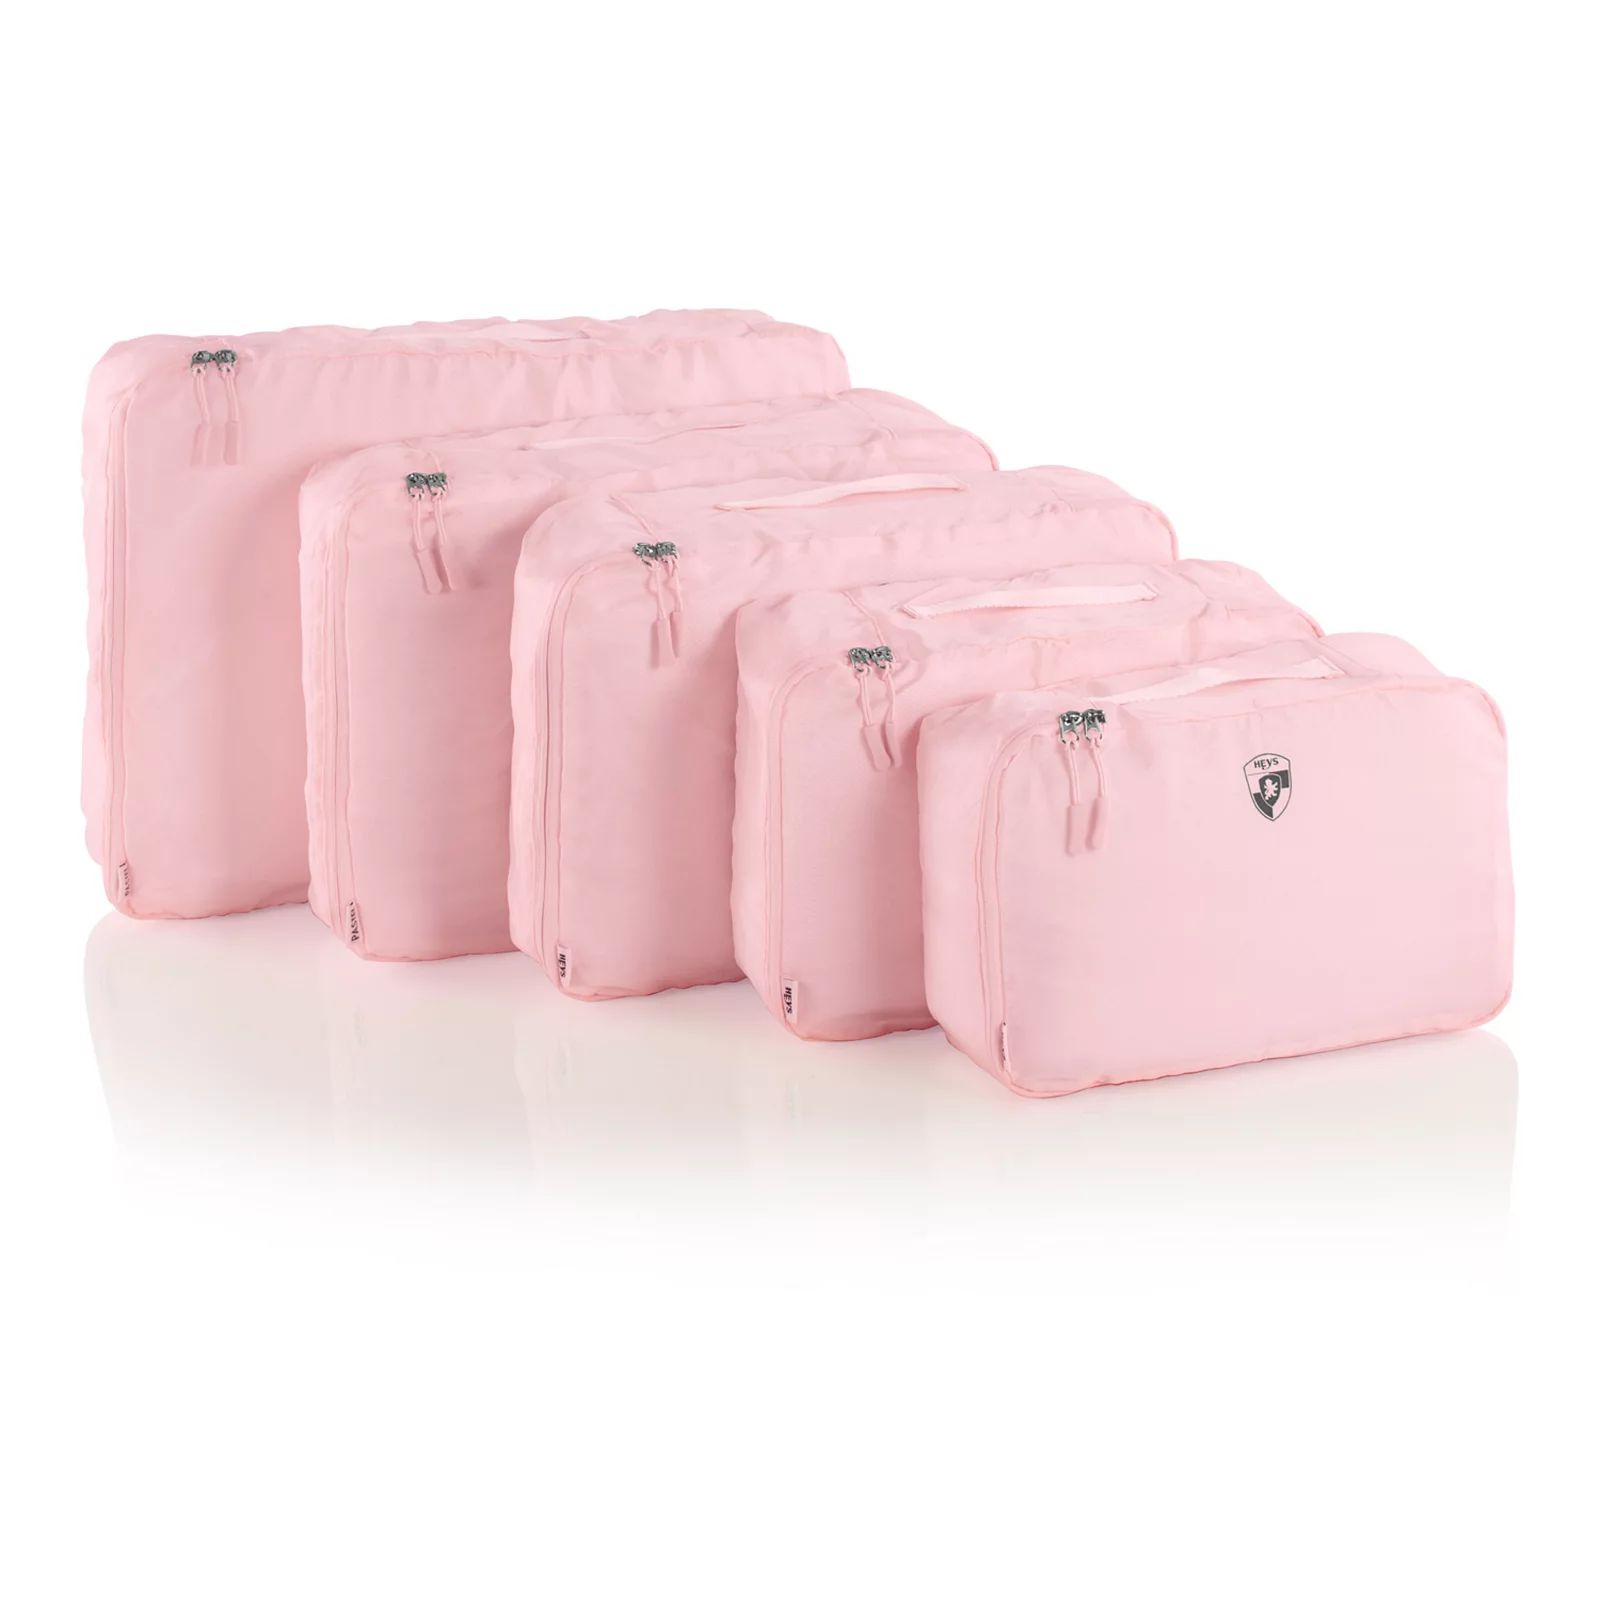 Heys 5-Piece Pastel Packing Cube Set, Pink, 5 PC SET | Kohl's